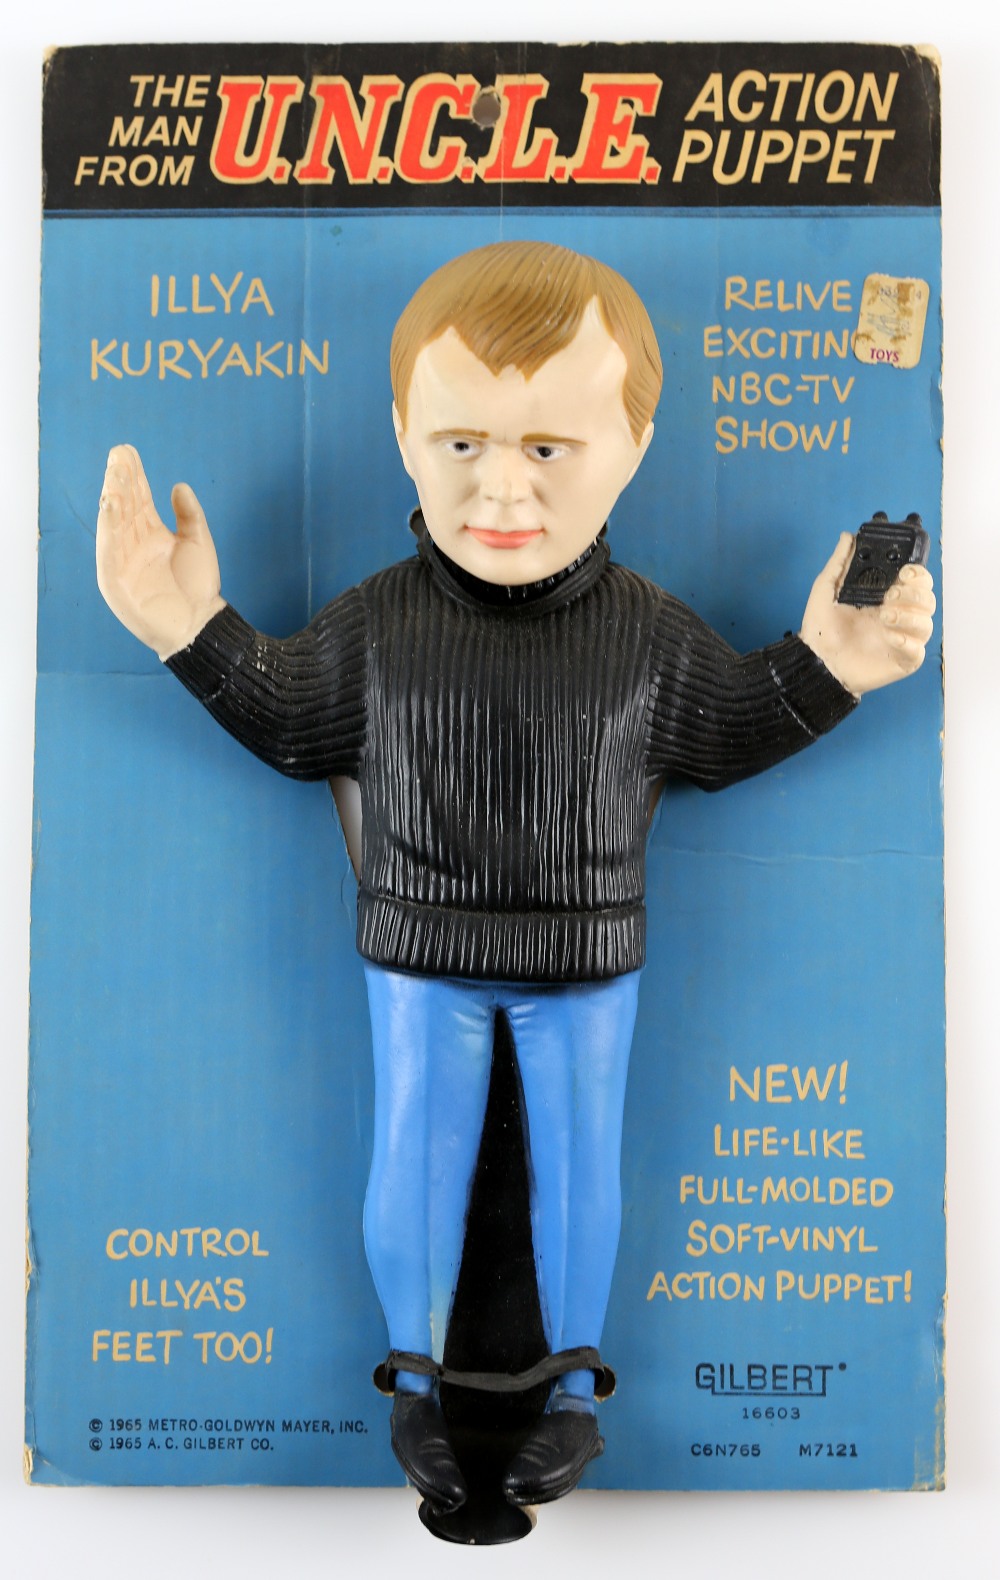 The Man From U.N.C.L.E. - Gilbert Illya Kuryakin Action Puppet from 1965, 16603, Original card, 13